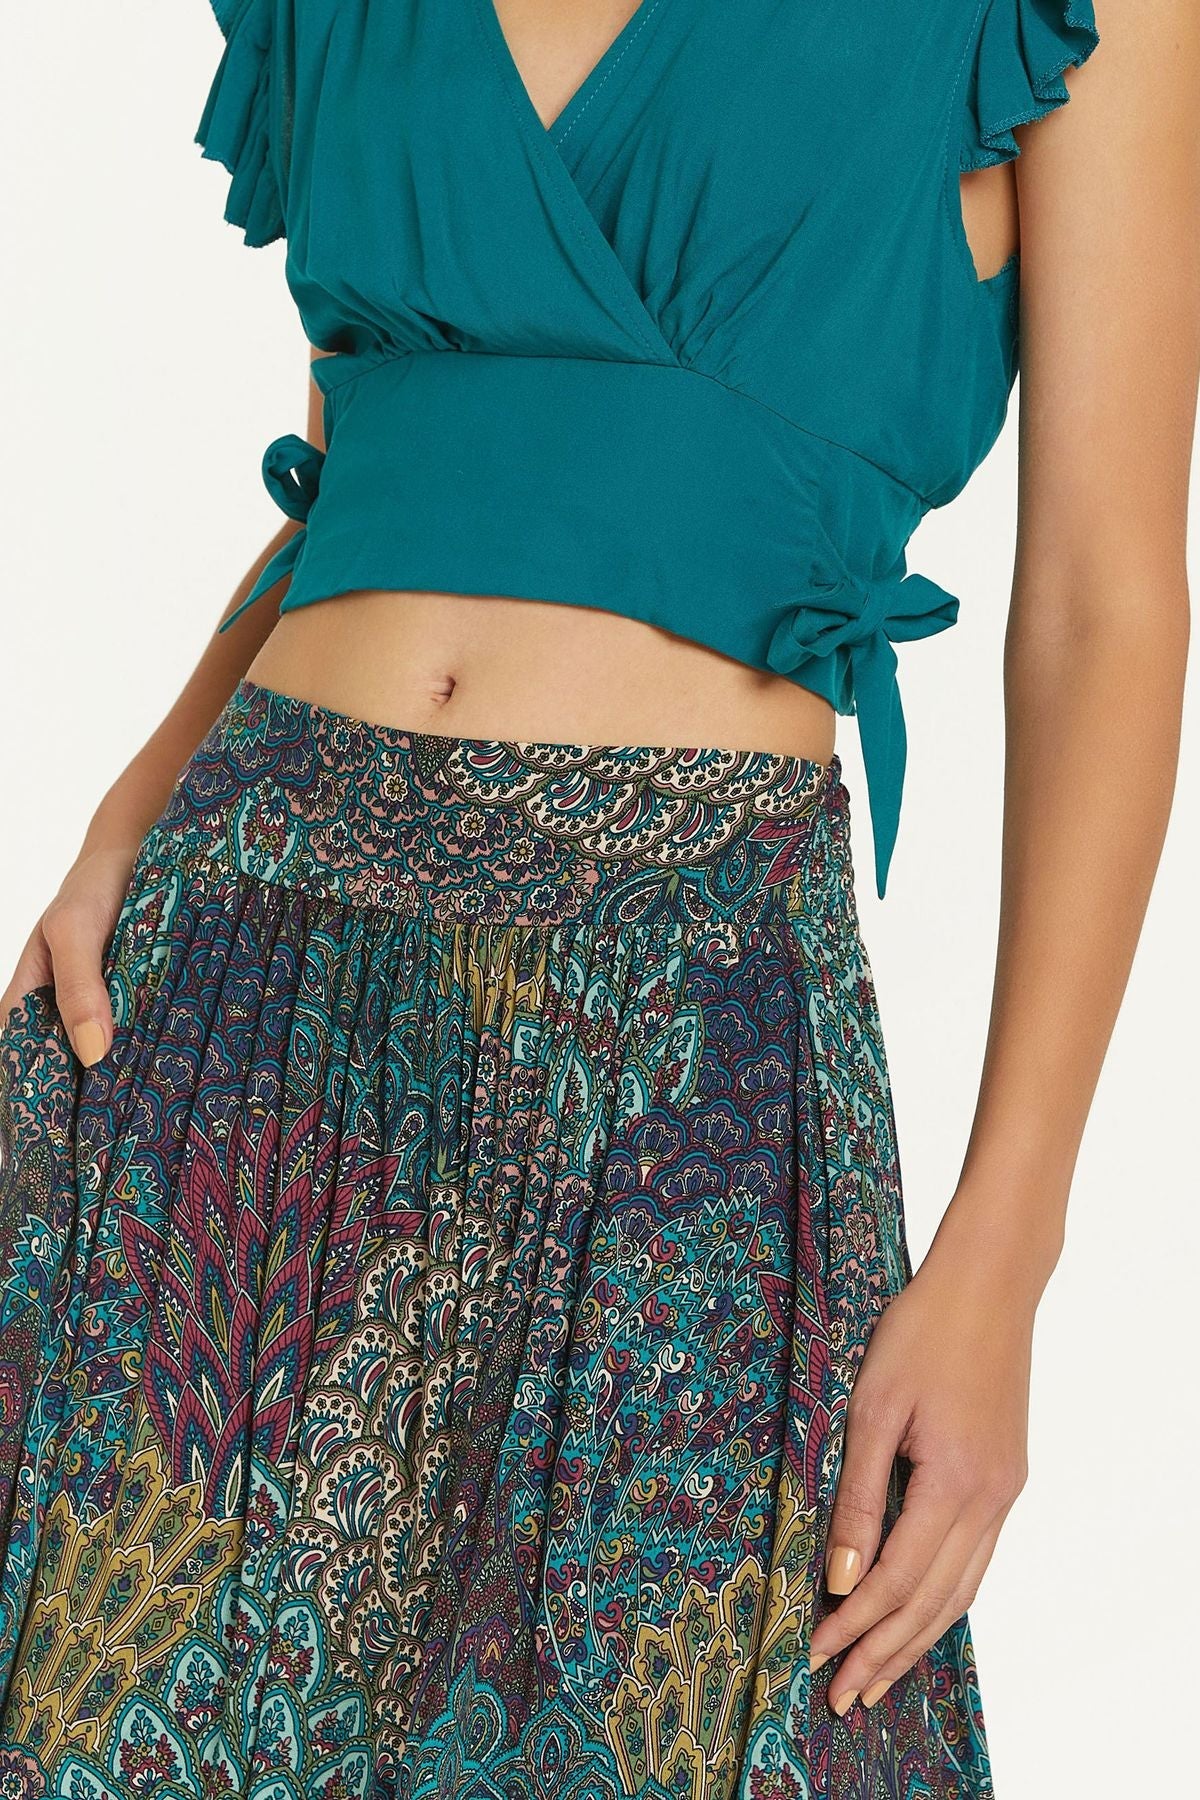 Elastic Waist Printed Hippie Midi Skirt Turquoise